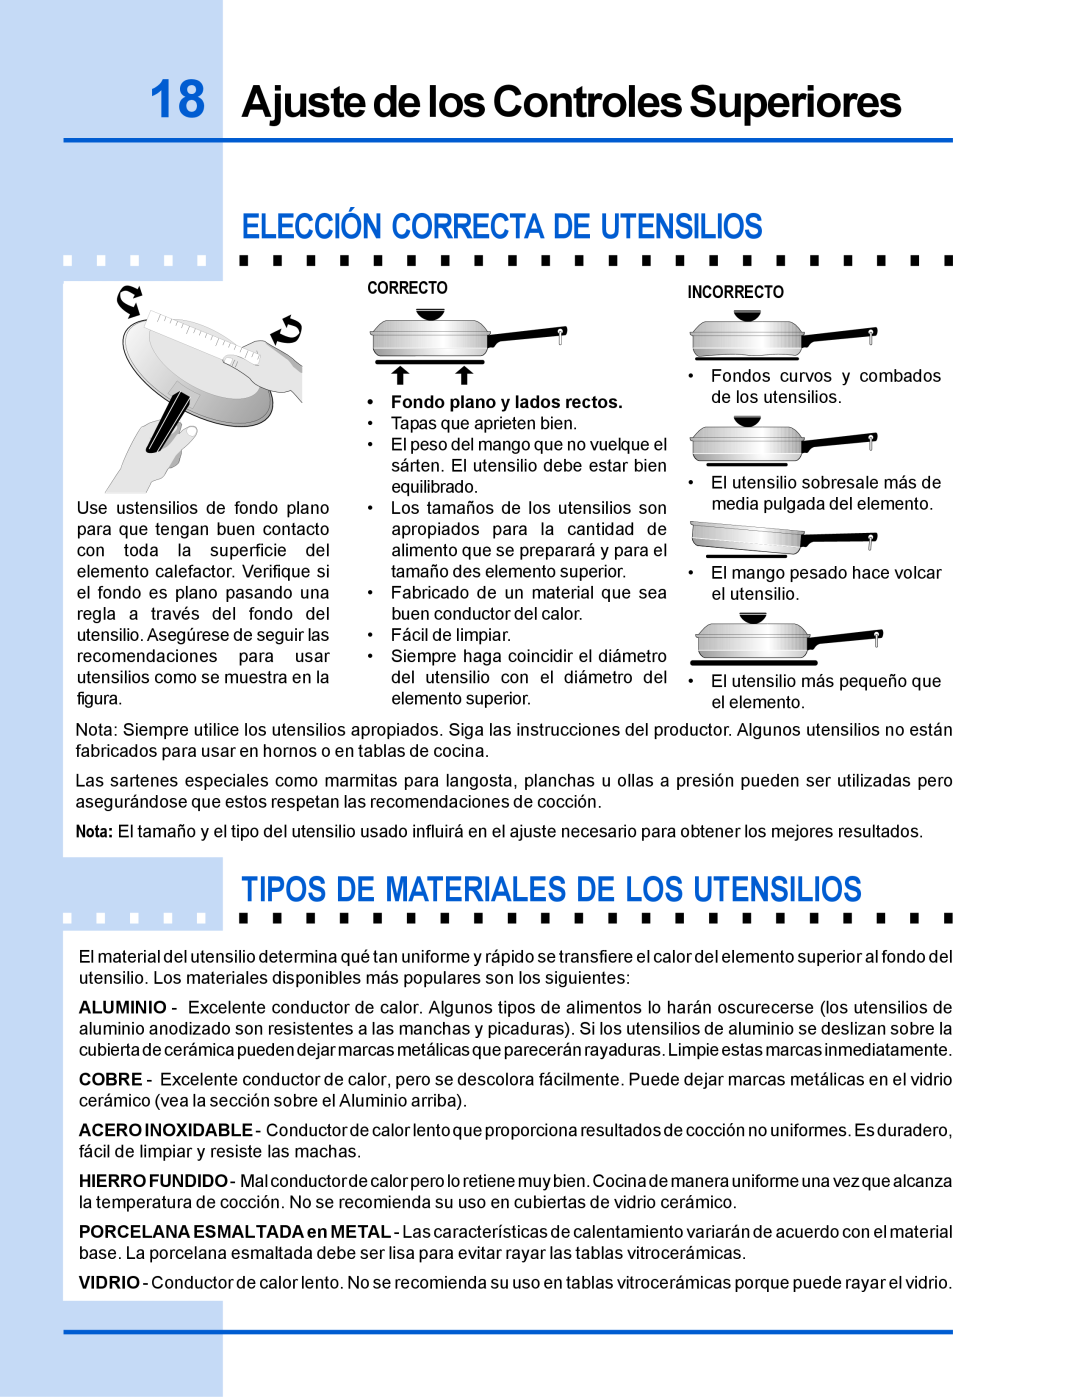 Electrolux 318 200 635 manual Ajuste de los Controles Superiores, Elección Correcta De Utensilios 